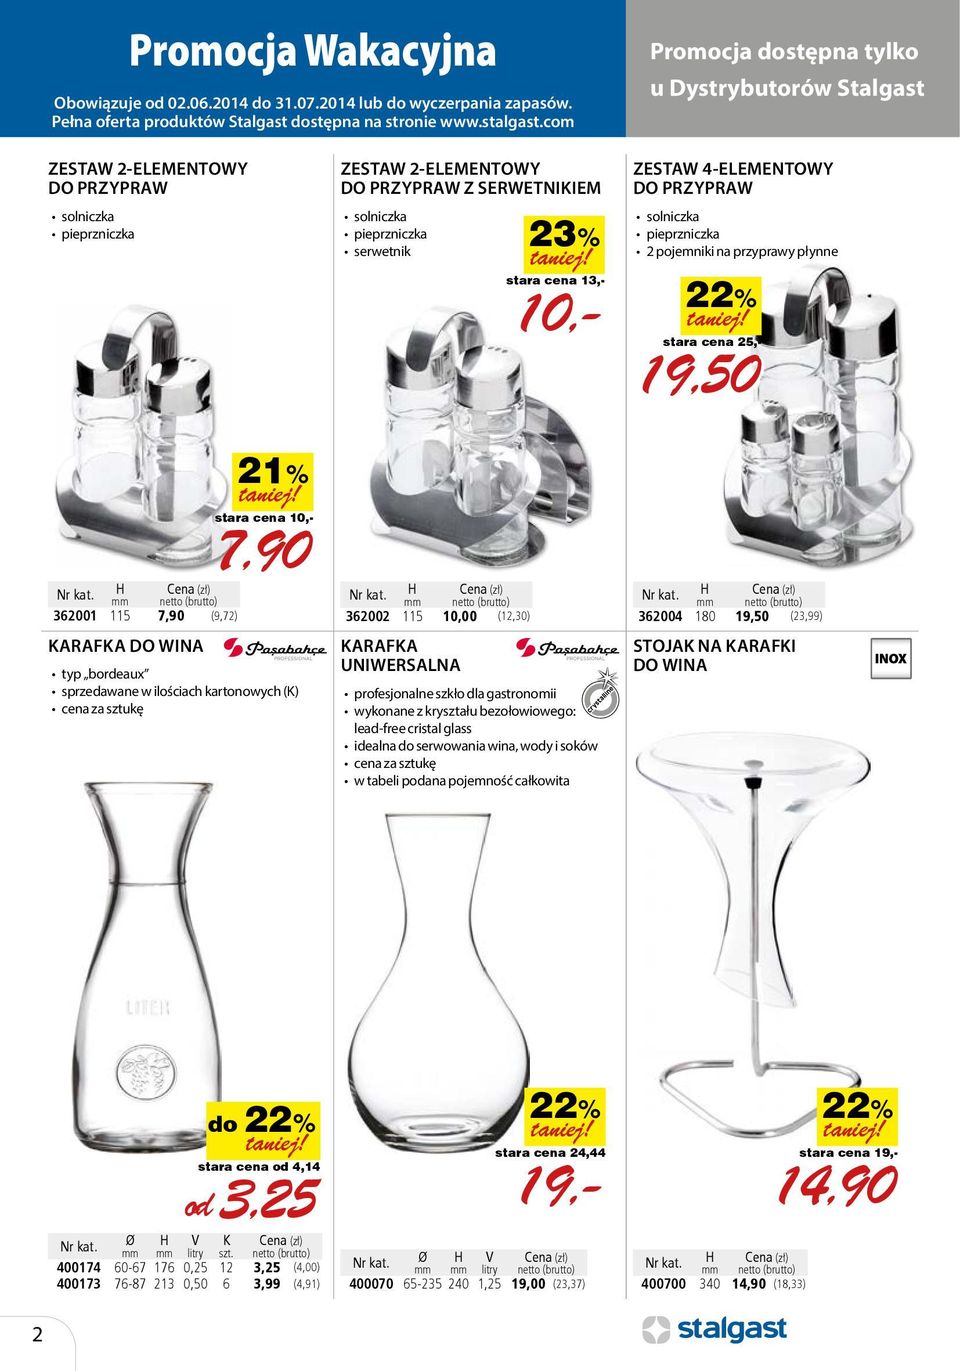 (zł) 362002 115 10,00 (12,30) KARAFKA UNIWERSALNA profesjonalne szkło dla gastronomii wykonane z kryształu bezołowiowego: lead-free cristal glass idealna do serwowania wina, wody i soków cena za